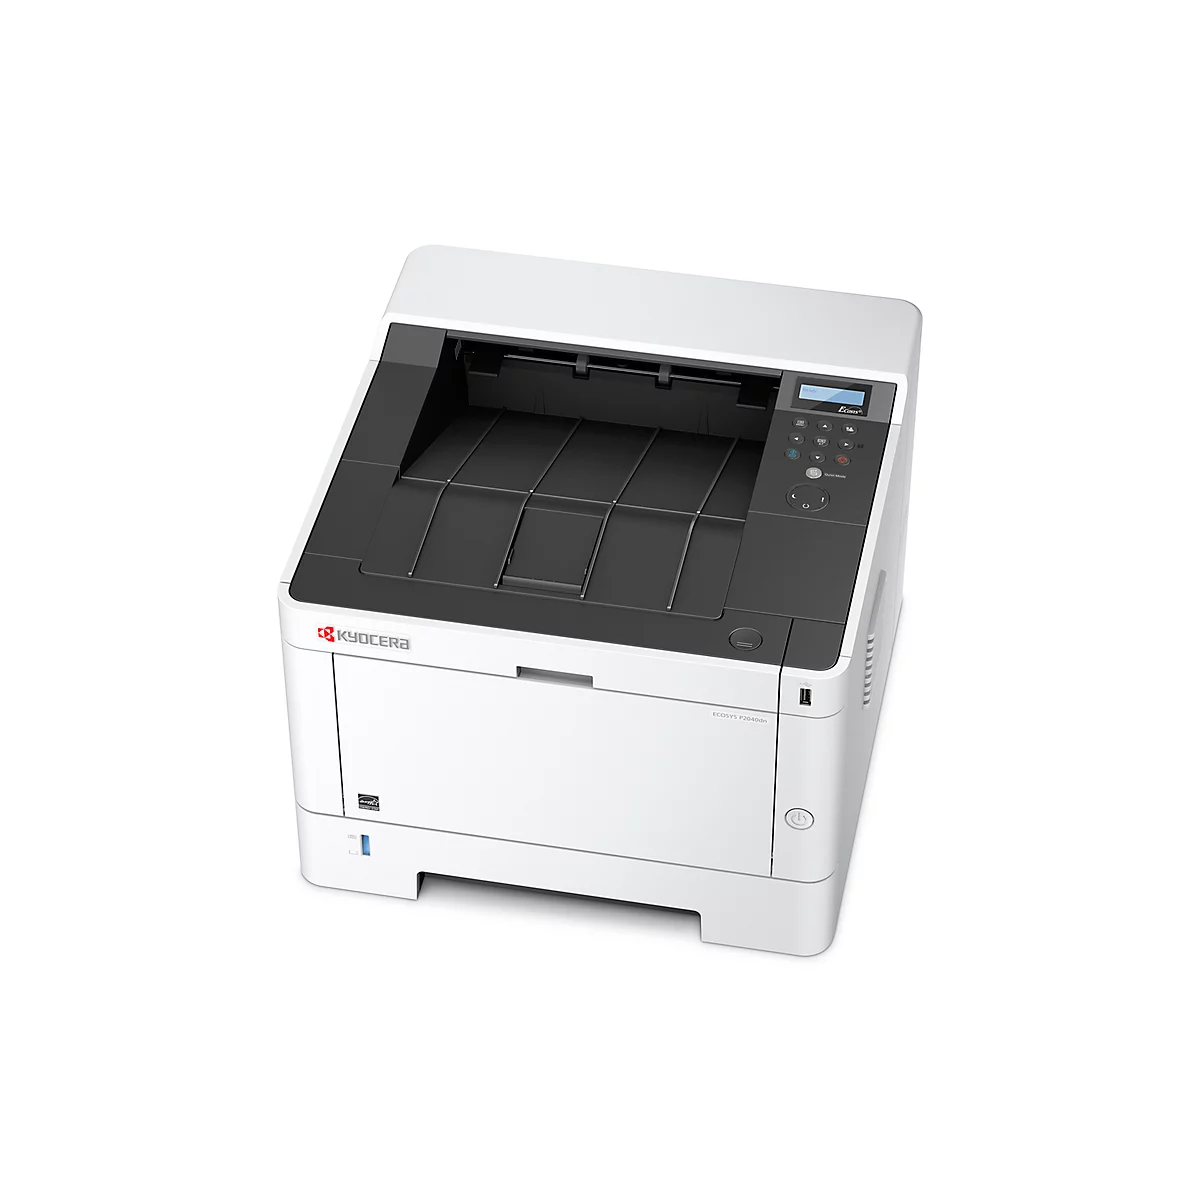 Impresora láser Kyocera ECOSYS P2040dn, impresora B/N, 40 hojas/min, USB 2.0 y LAN